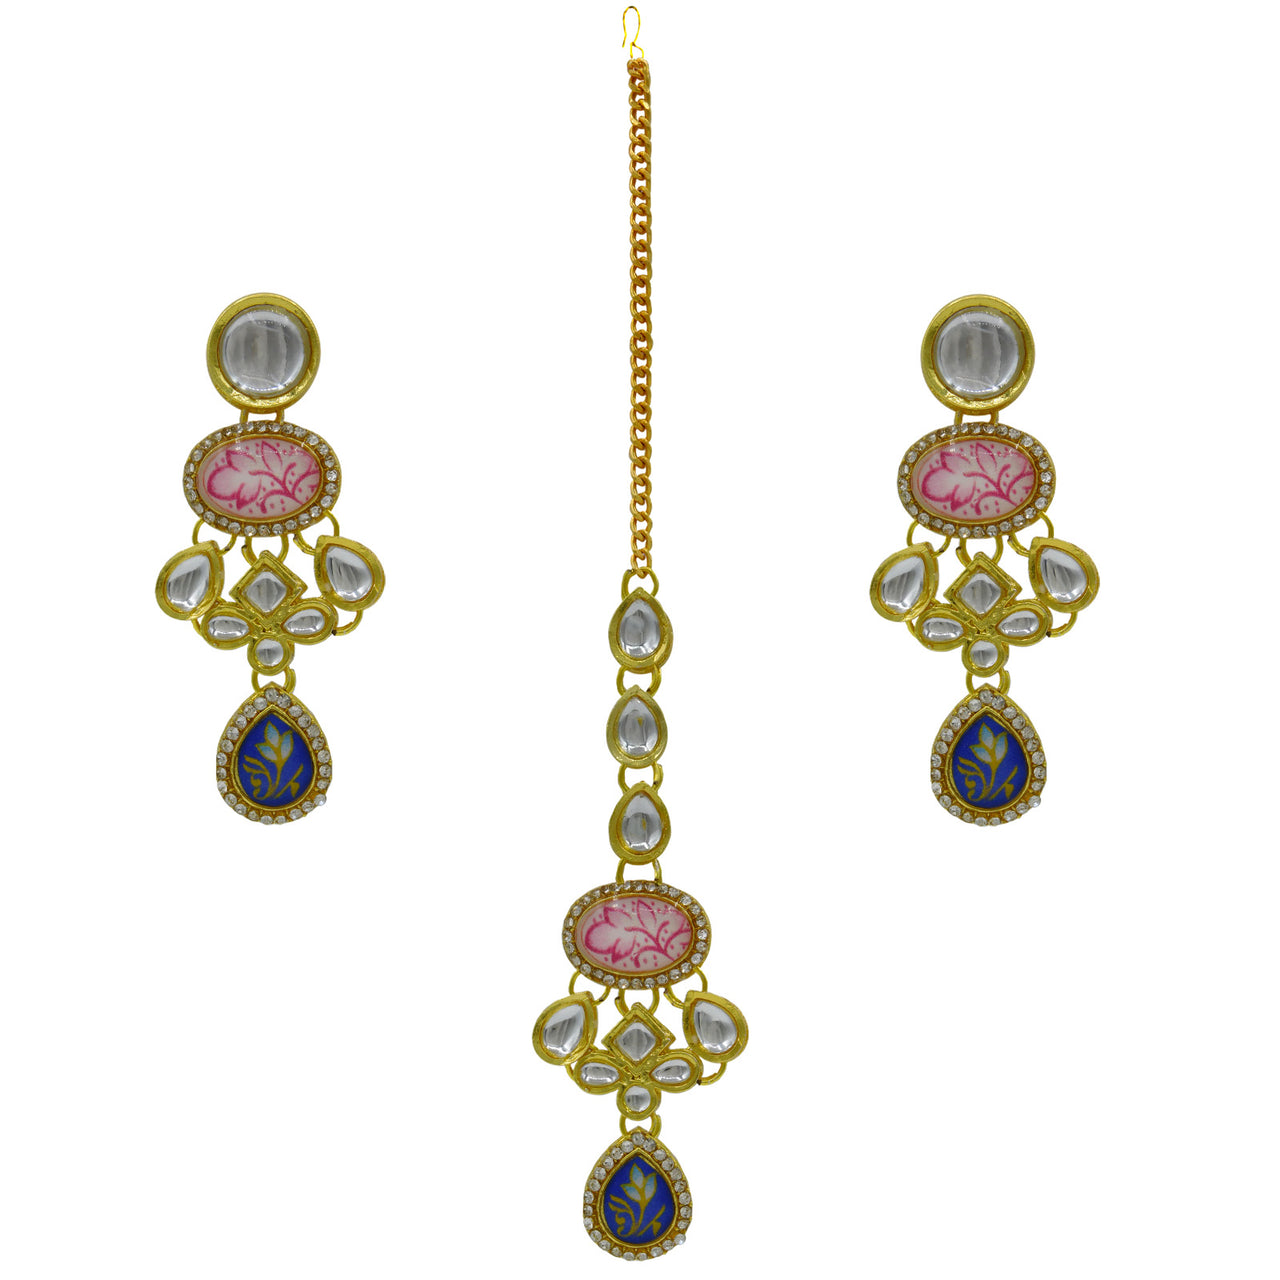 Sujwel Gold Plated Kundan Stones Design Choker Necklace Set (08-0460)